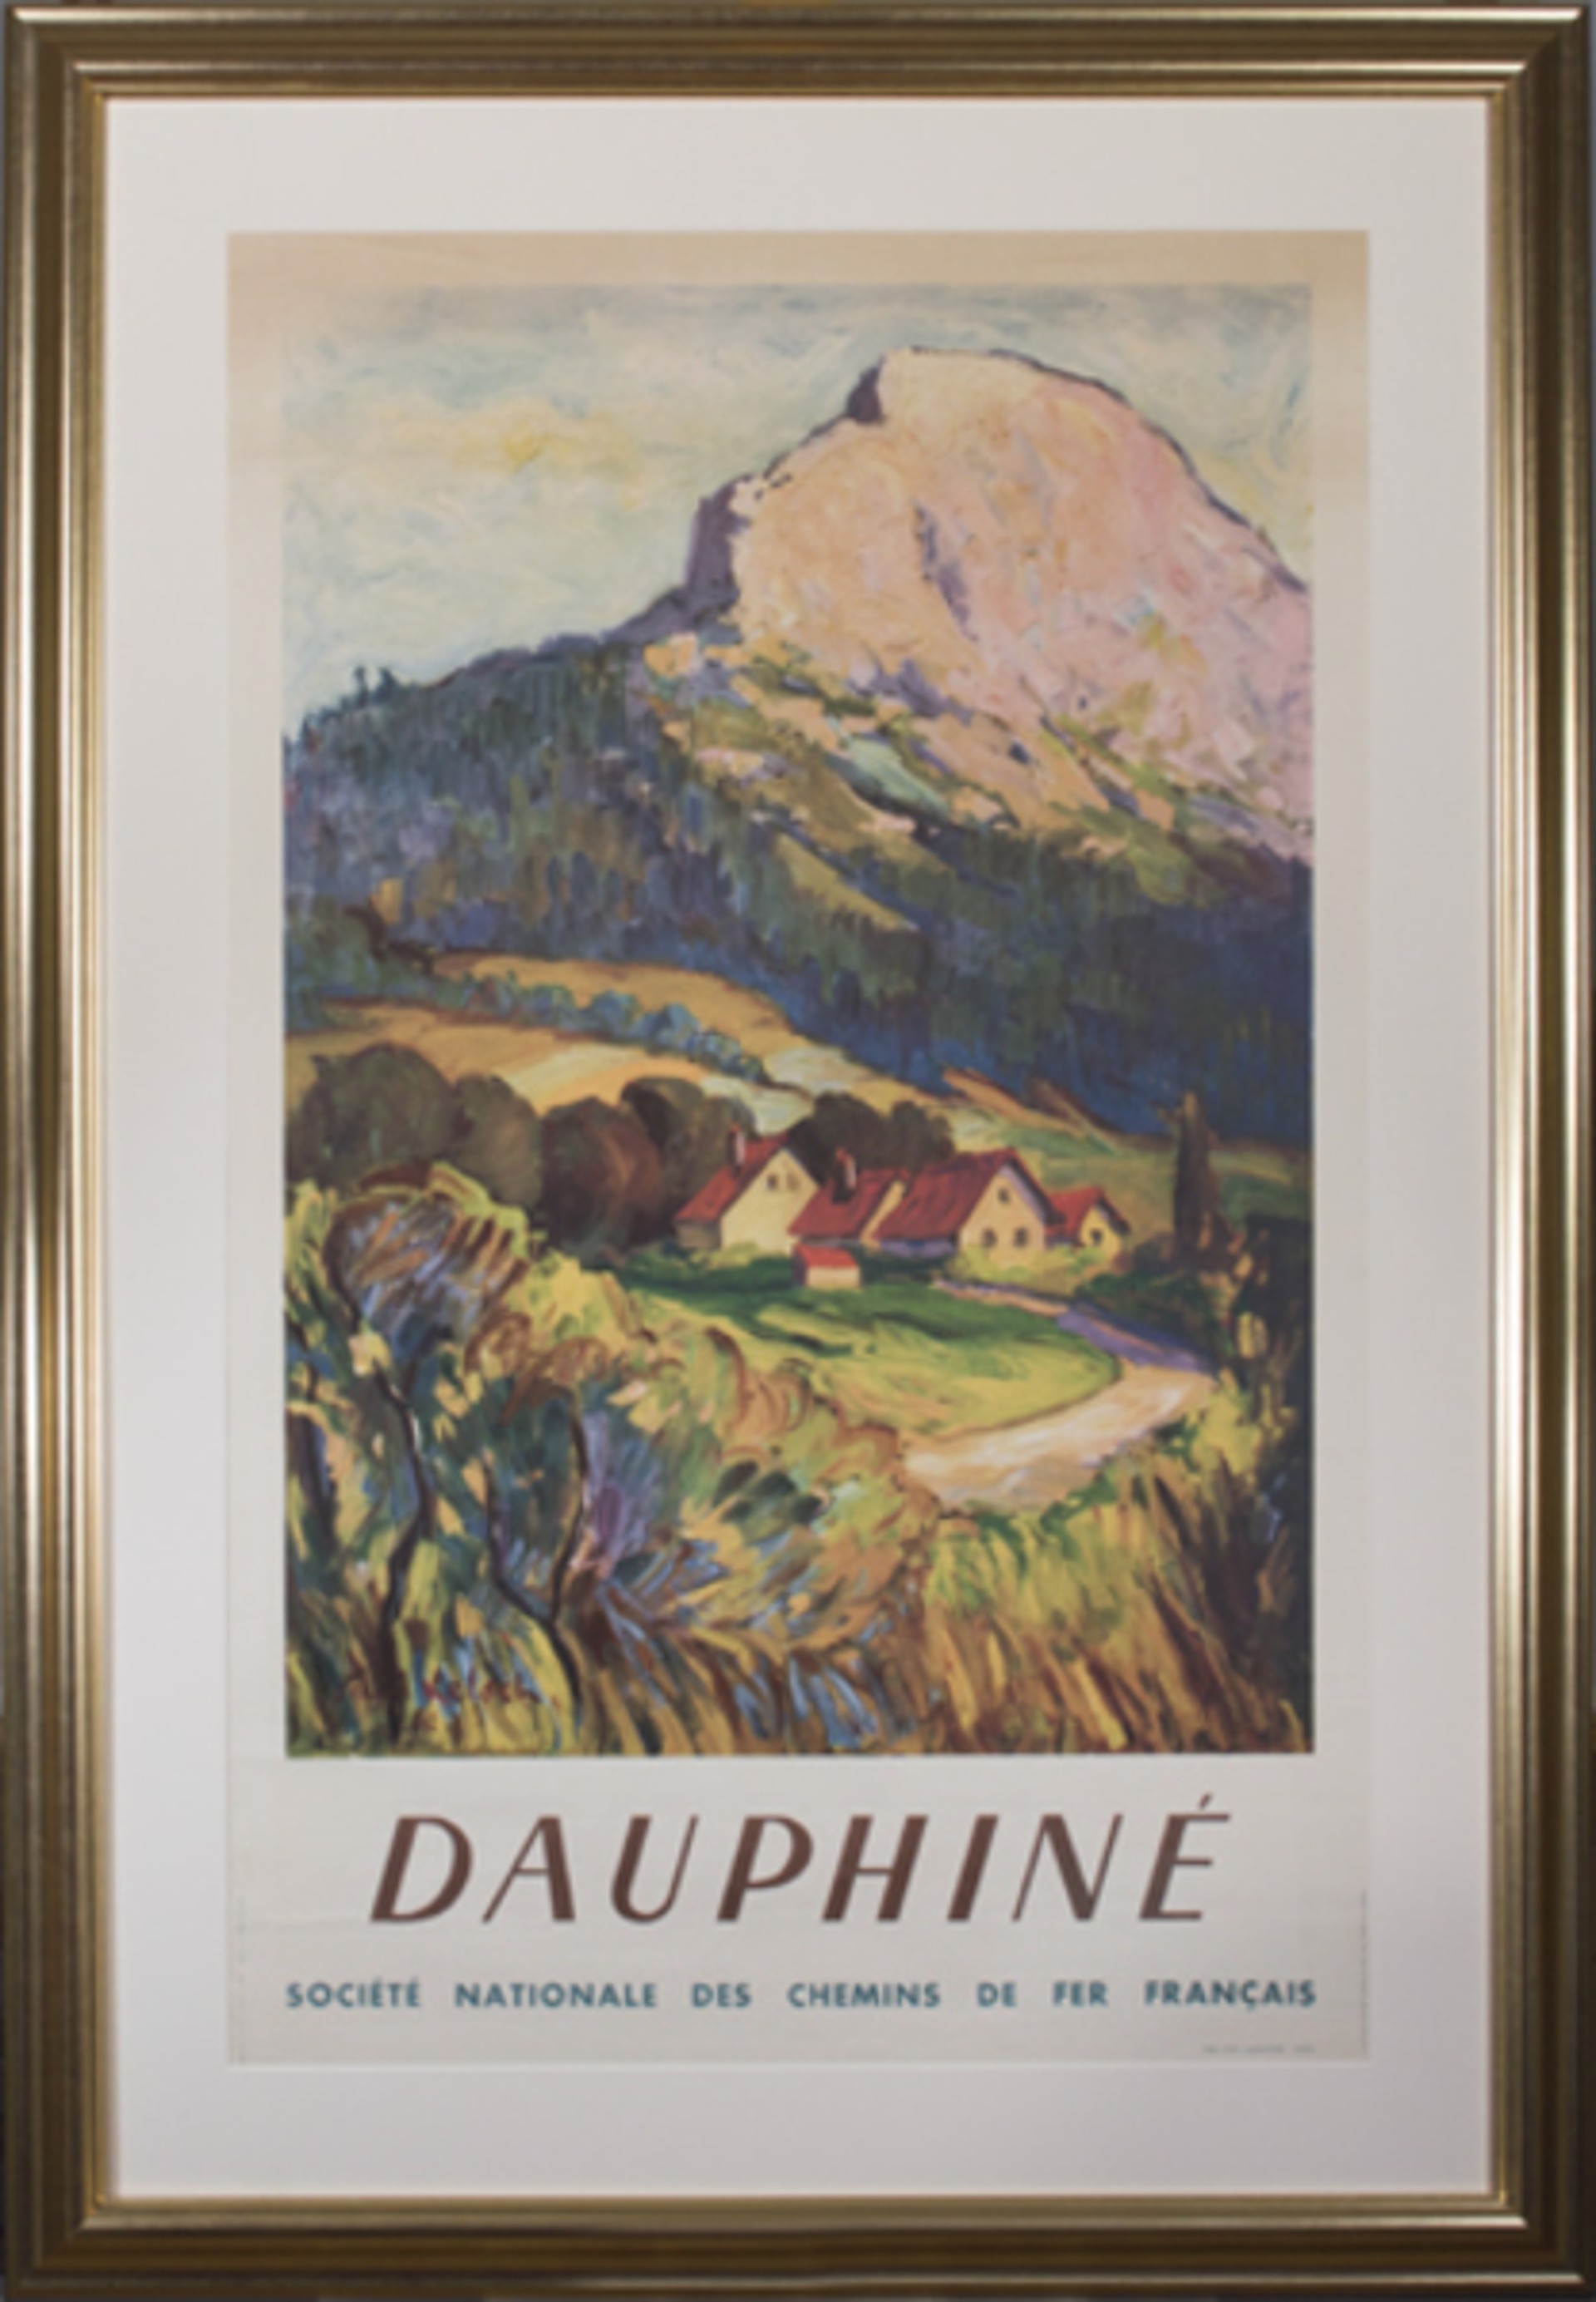 Dauphine (Societe Nationale des Chemins de Fer Francais) by Paul Kelsch